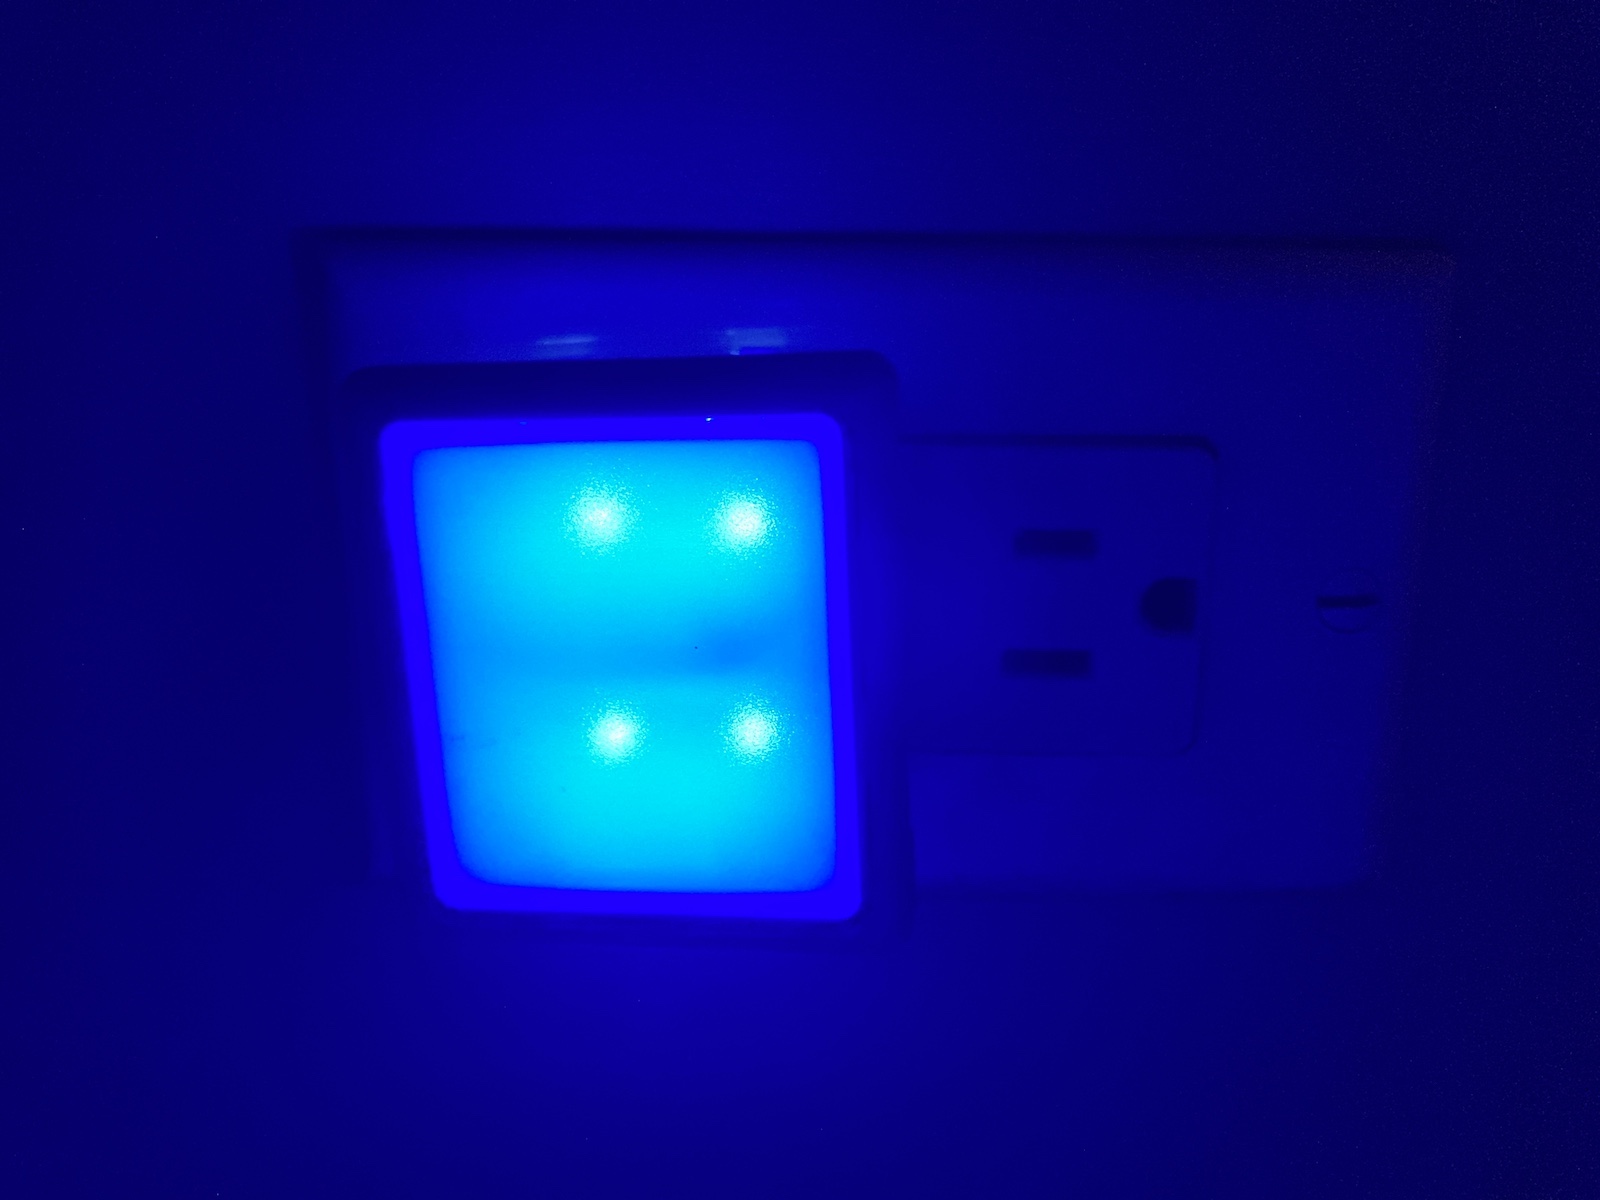 A blue nightlight is lit up in a wall socket